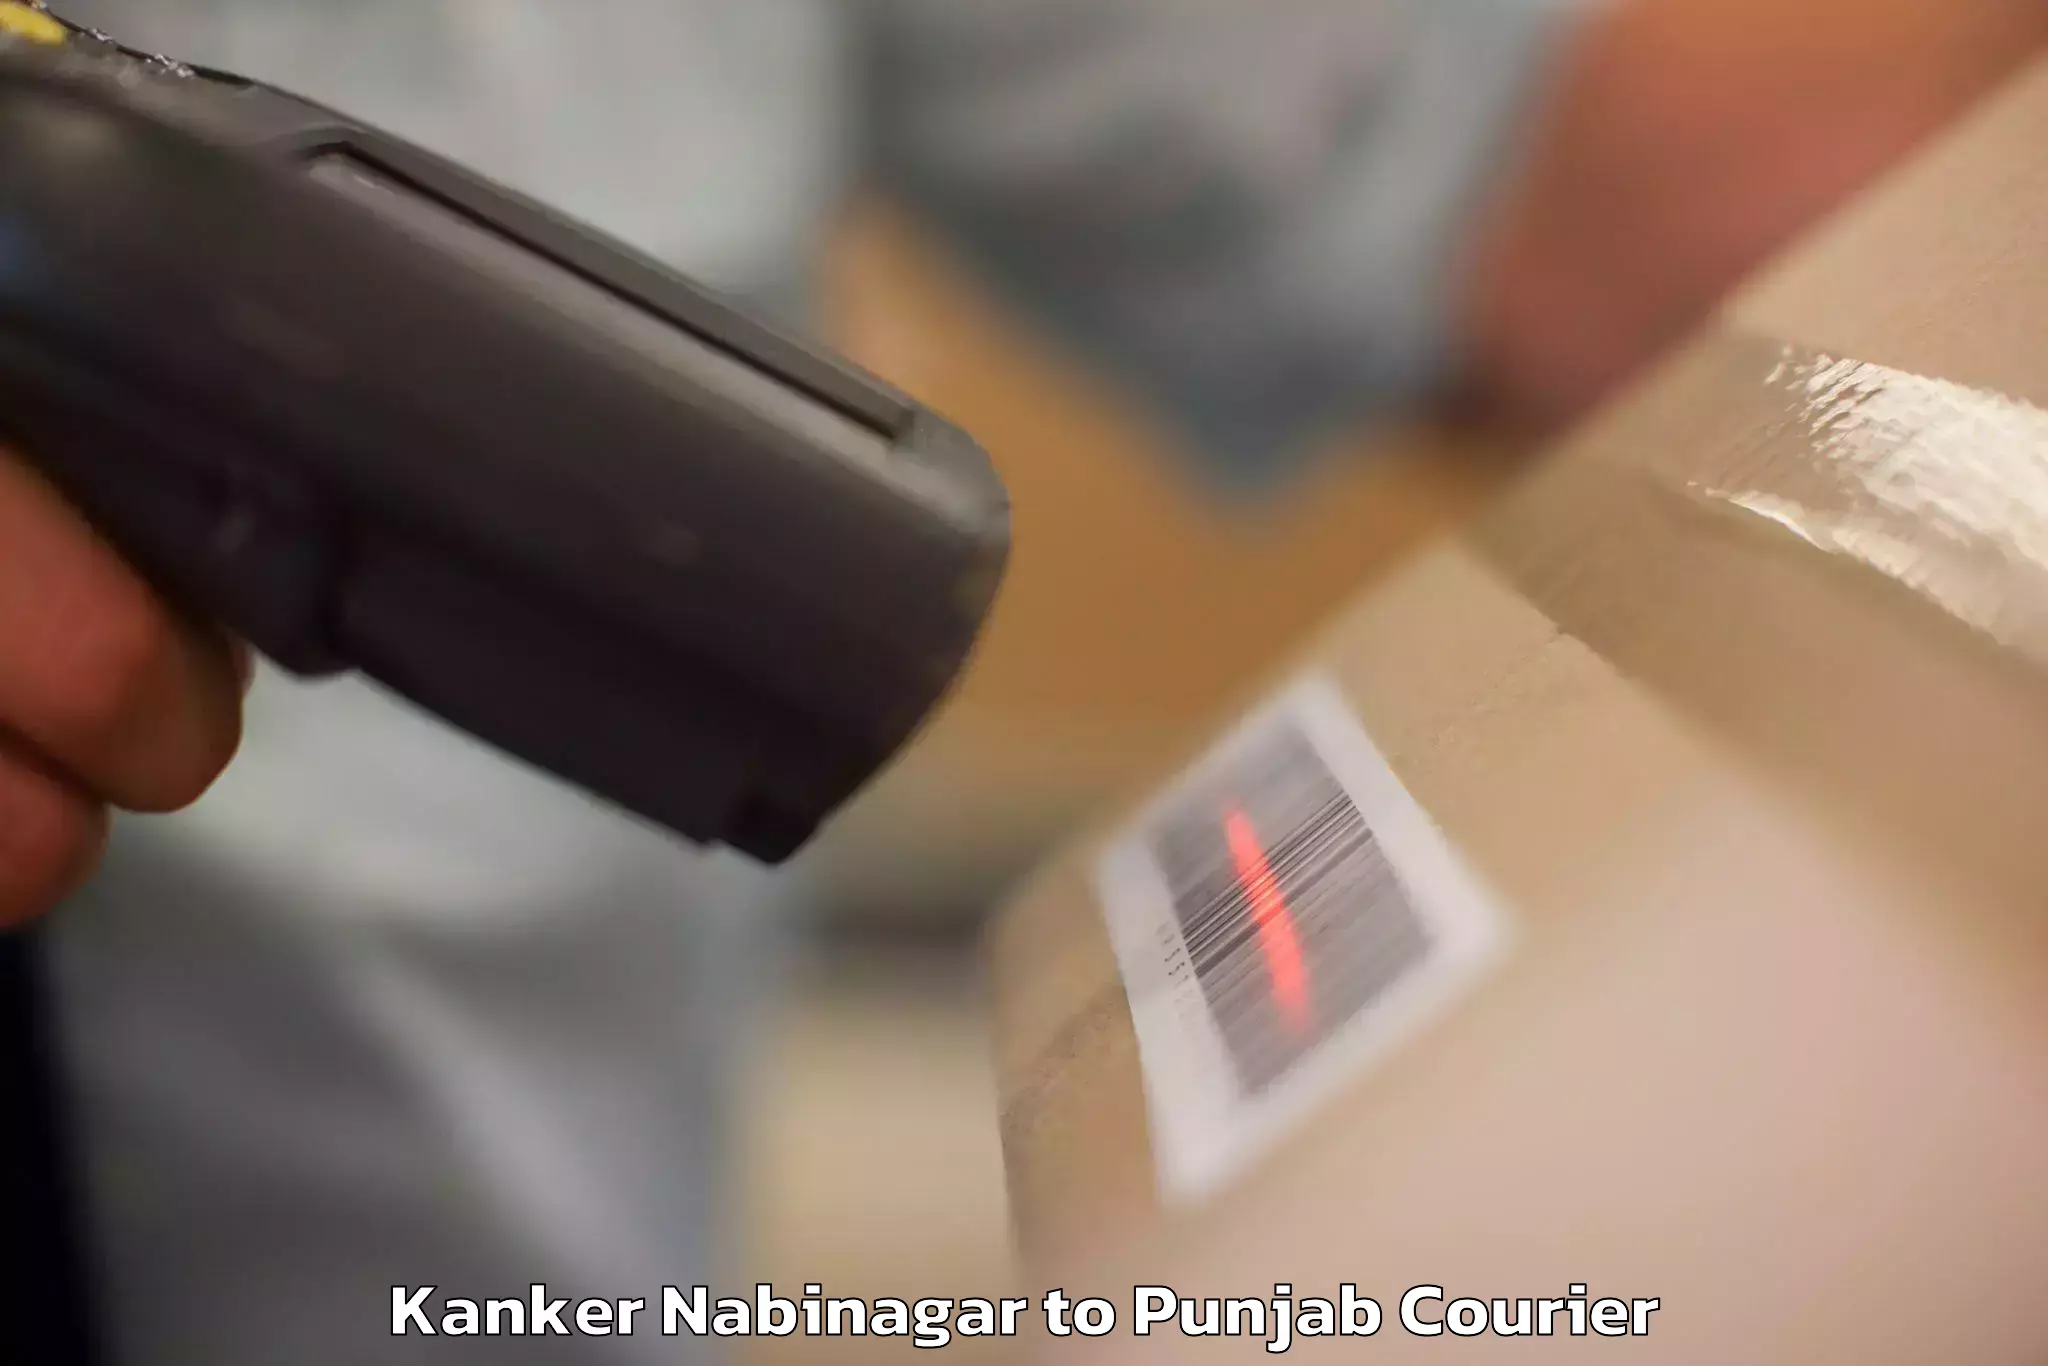 Luggage transport logistics Kanker Nabinagar to Punjab